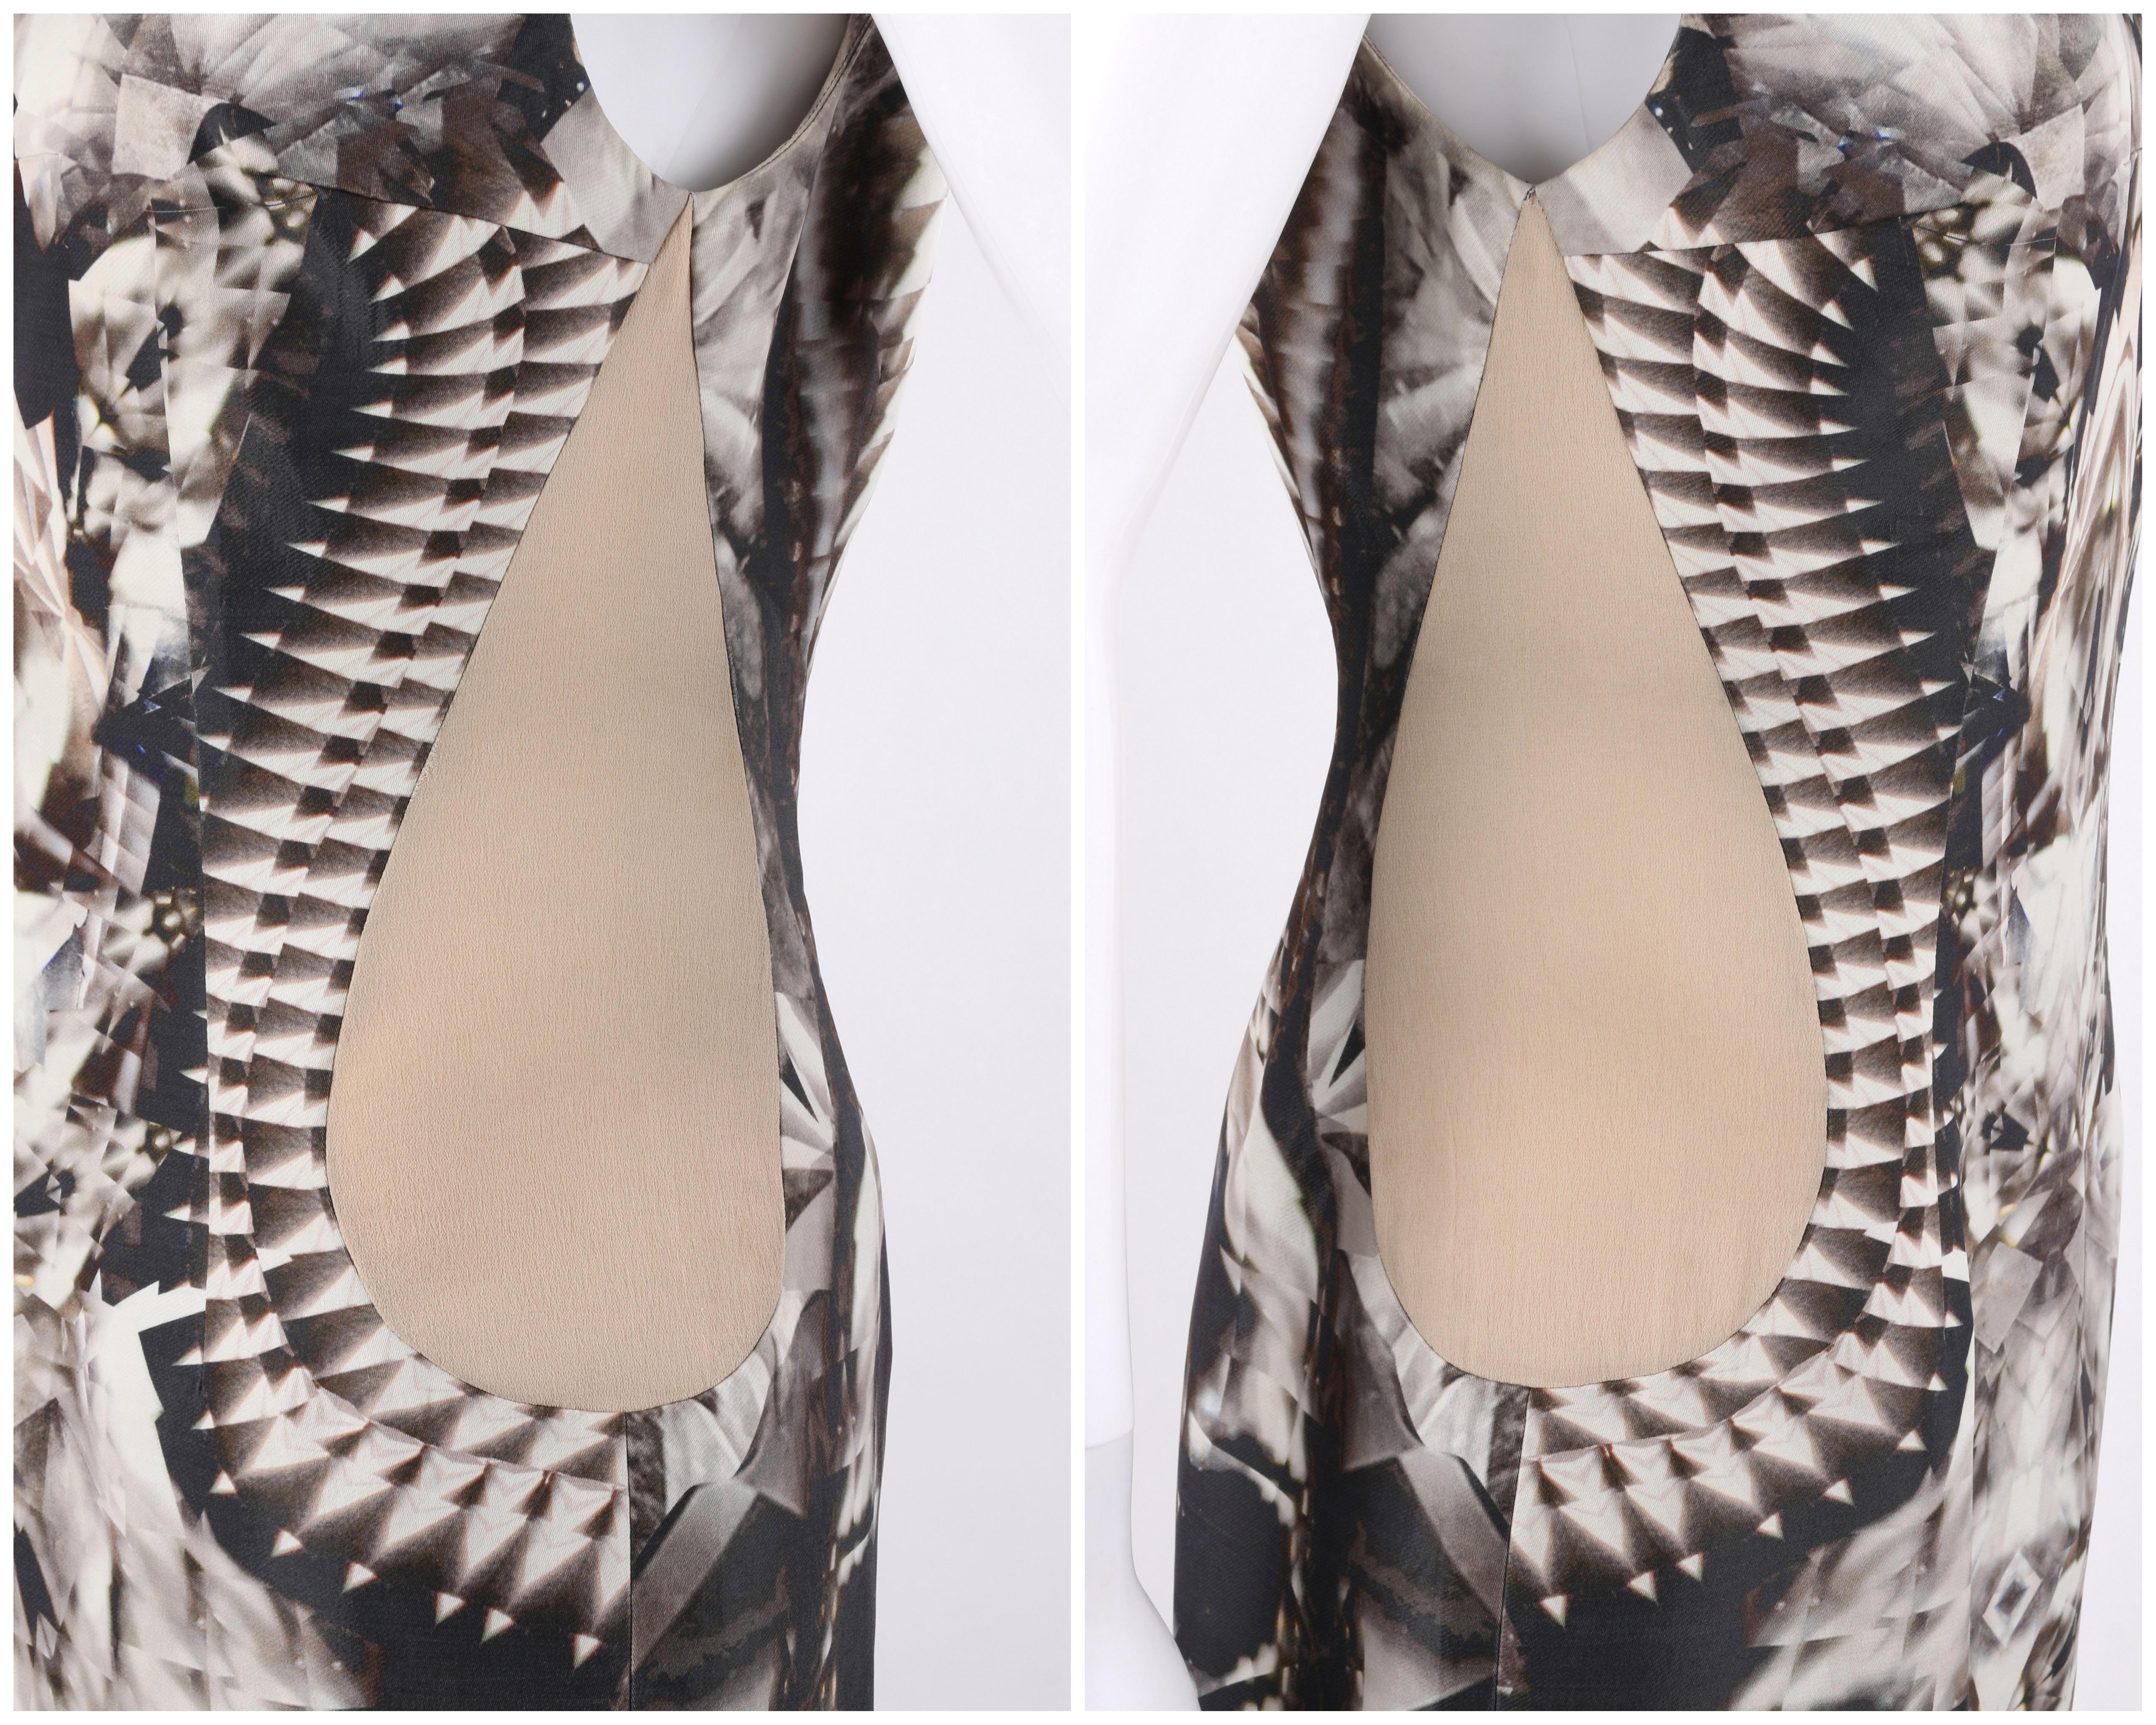 Women's ALEXANDER McQUEEN S/S 2009 Iconic Runway Skeleton Kaleidoscope Print Dress 44  For Sale